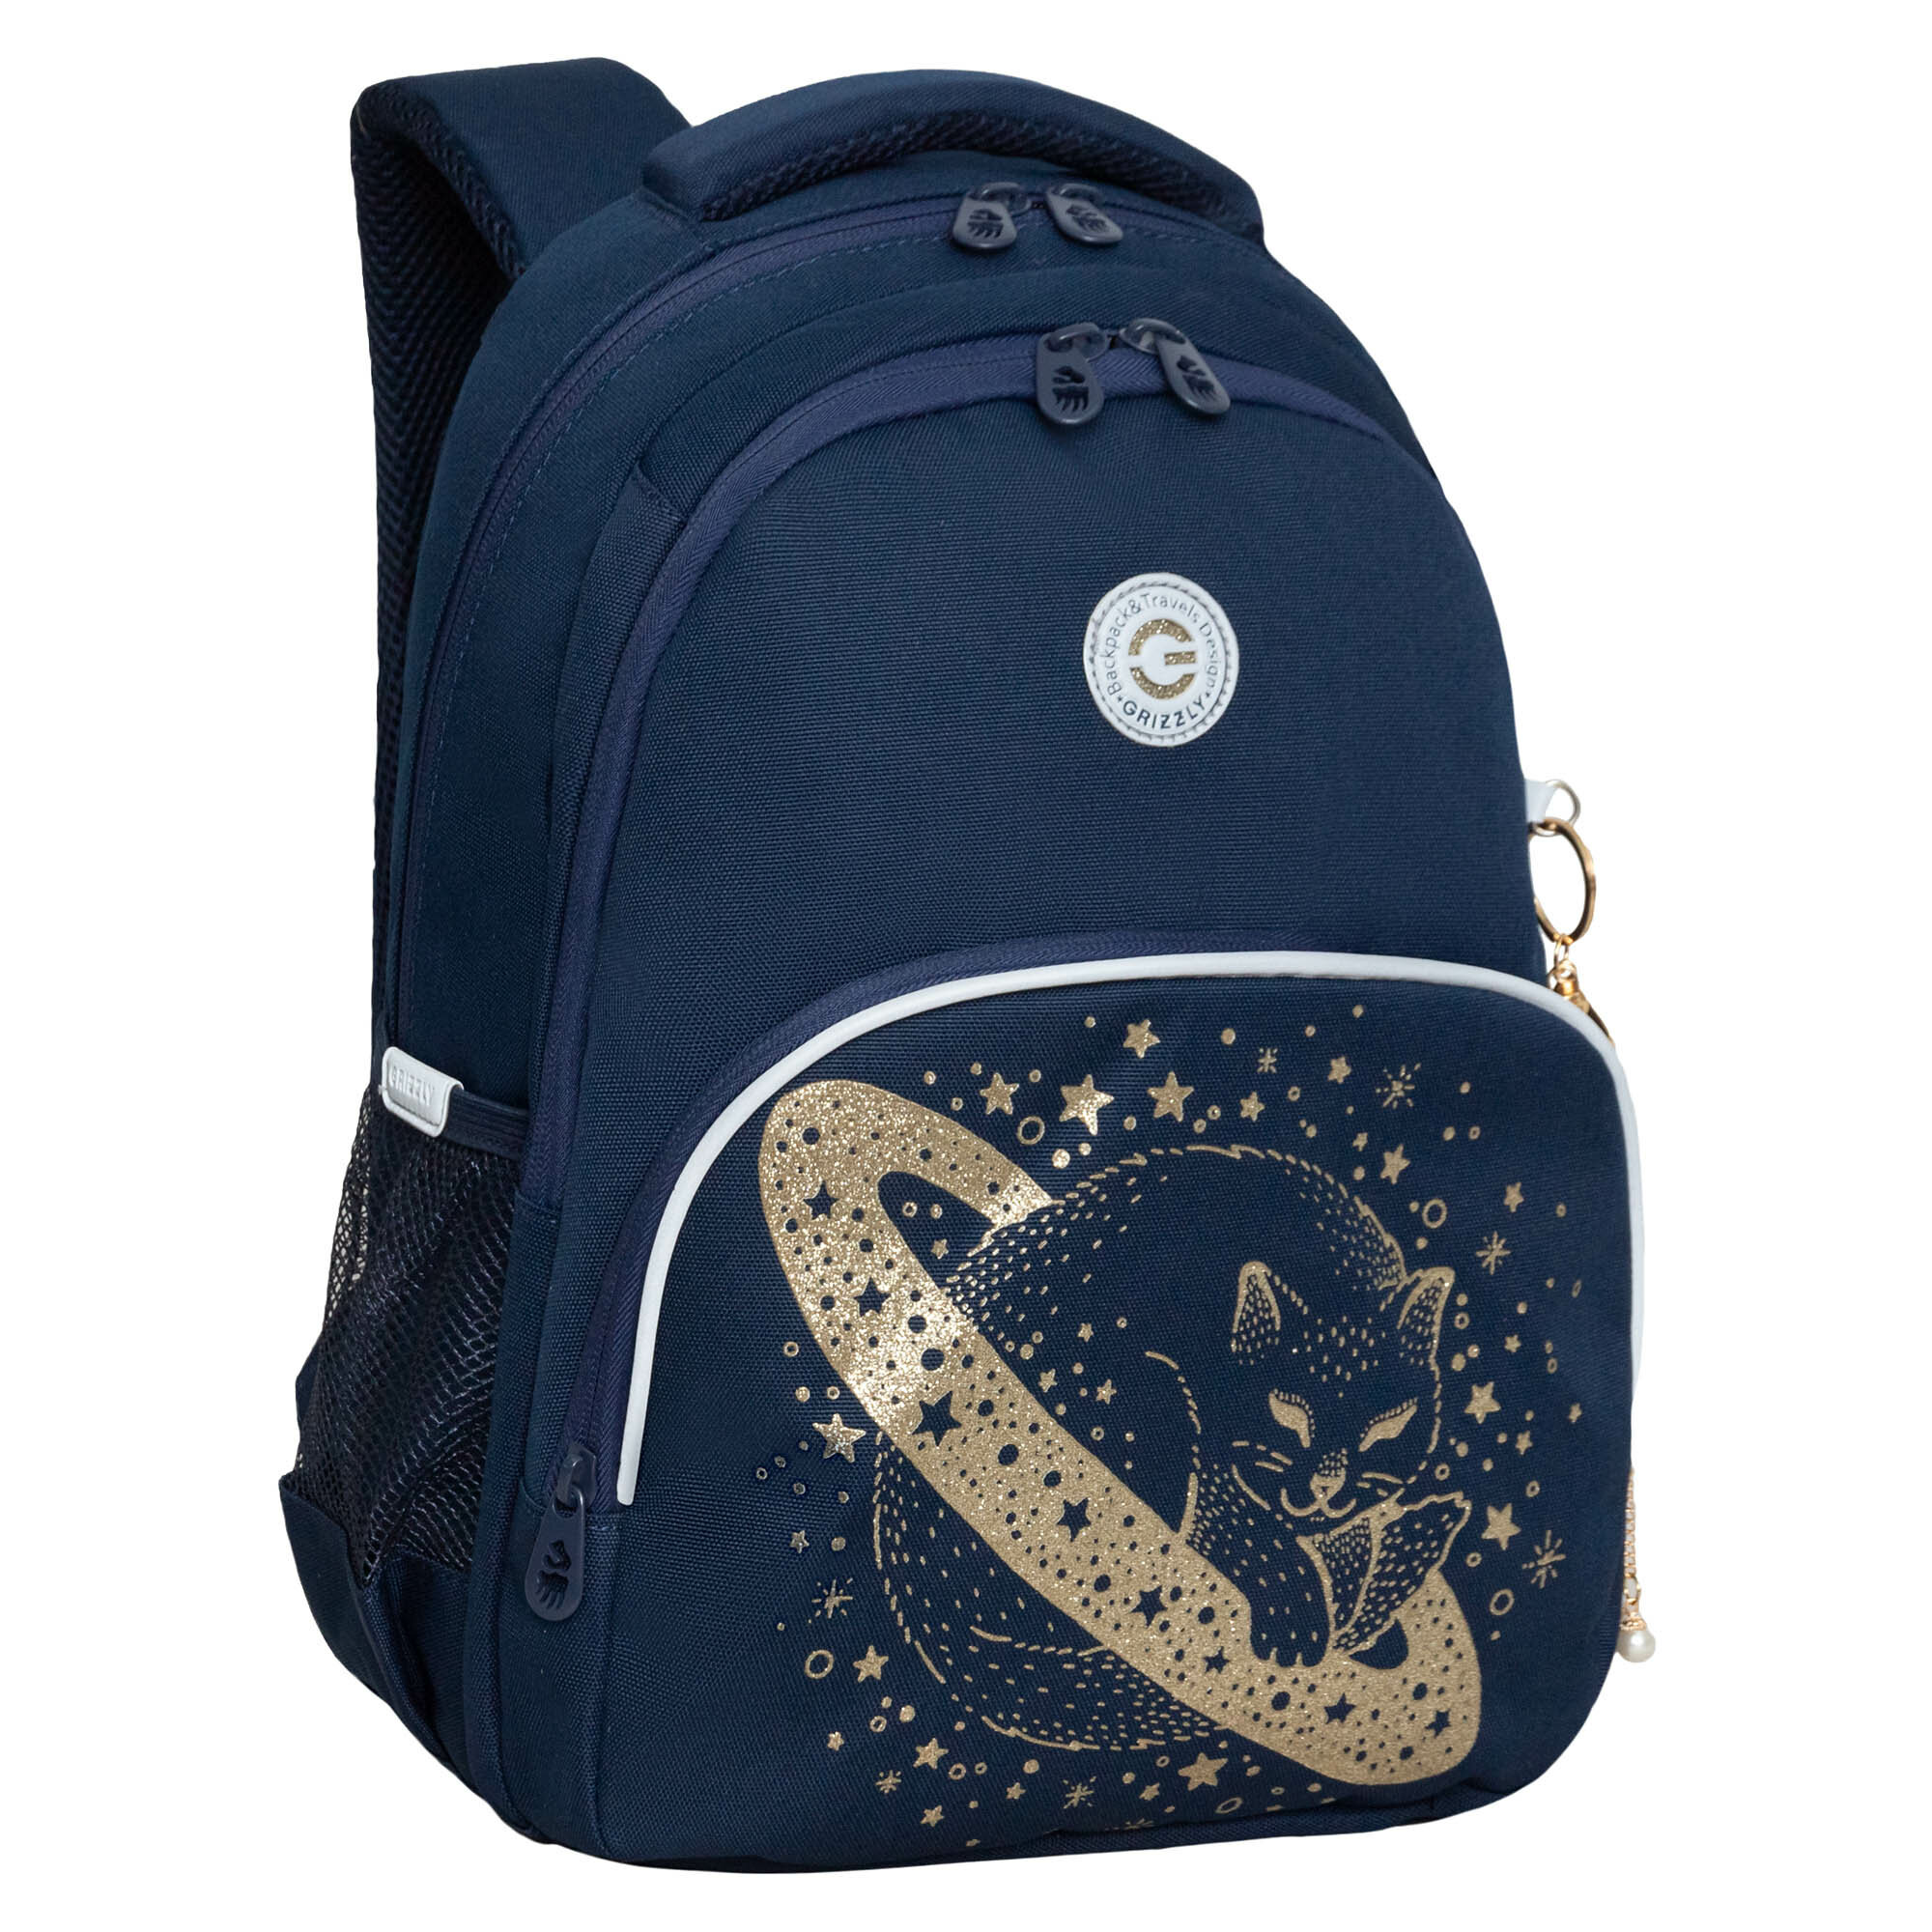 Рюкзак/ ранец школьный GRIZZLY RG-460-2 с карманом для ноутбука 13", анатомической спинкой, для девочки, синий